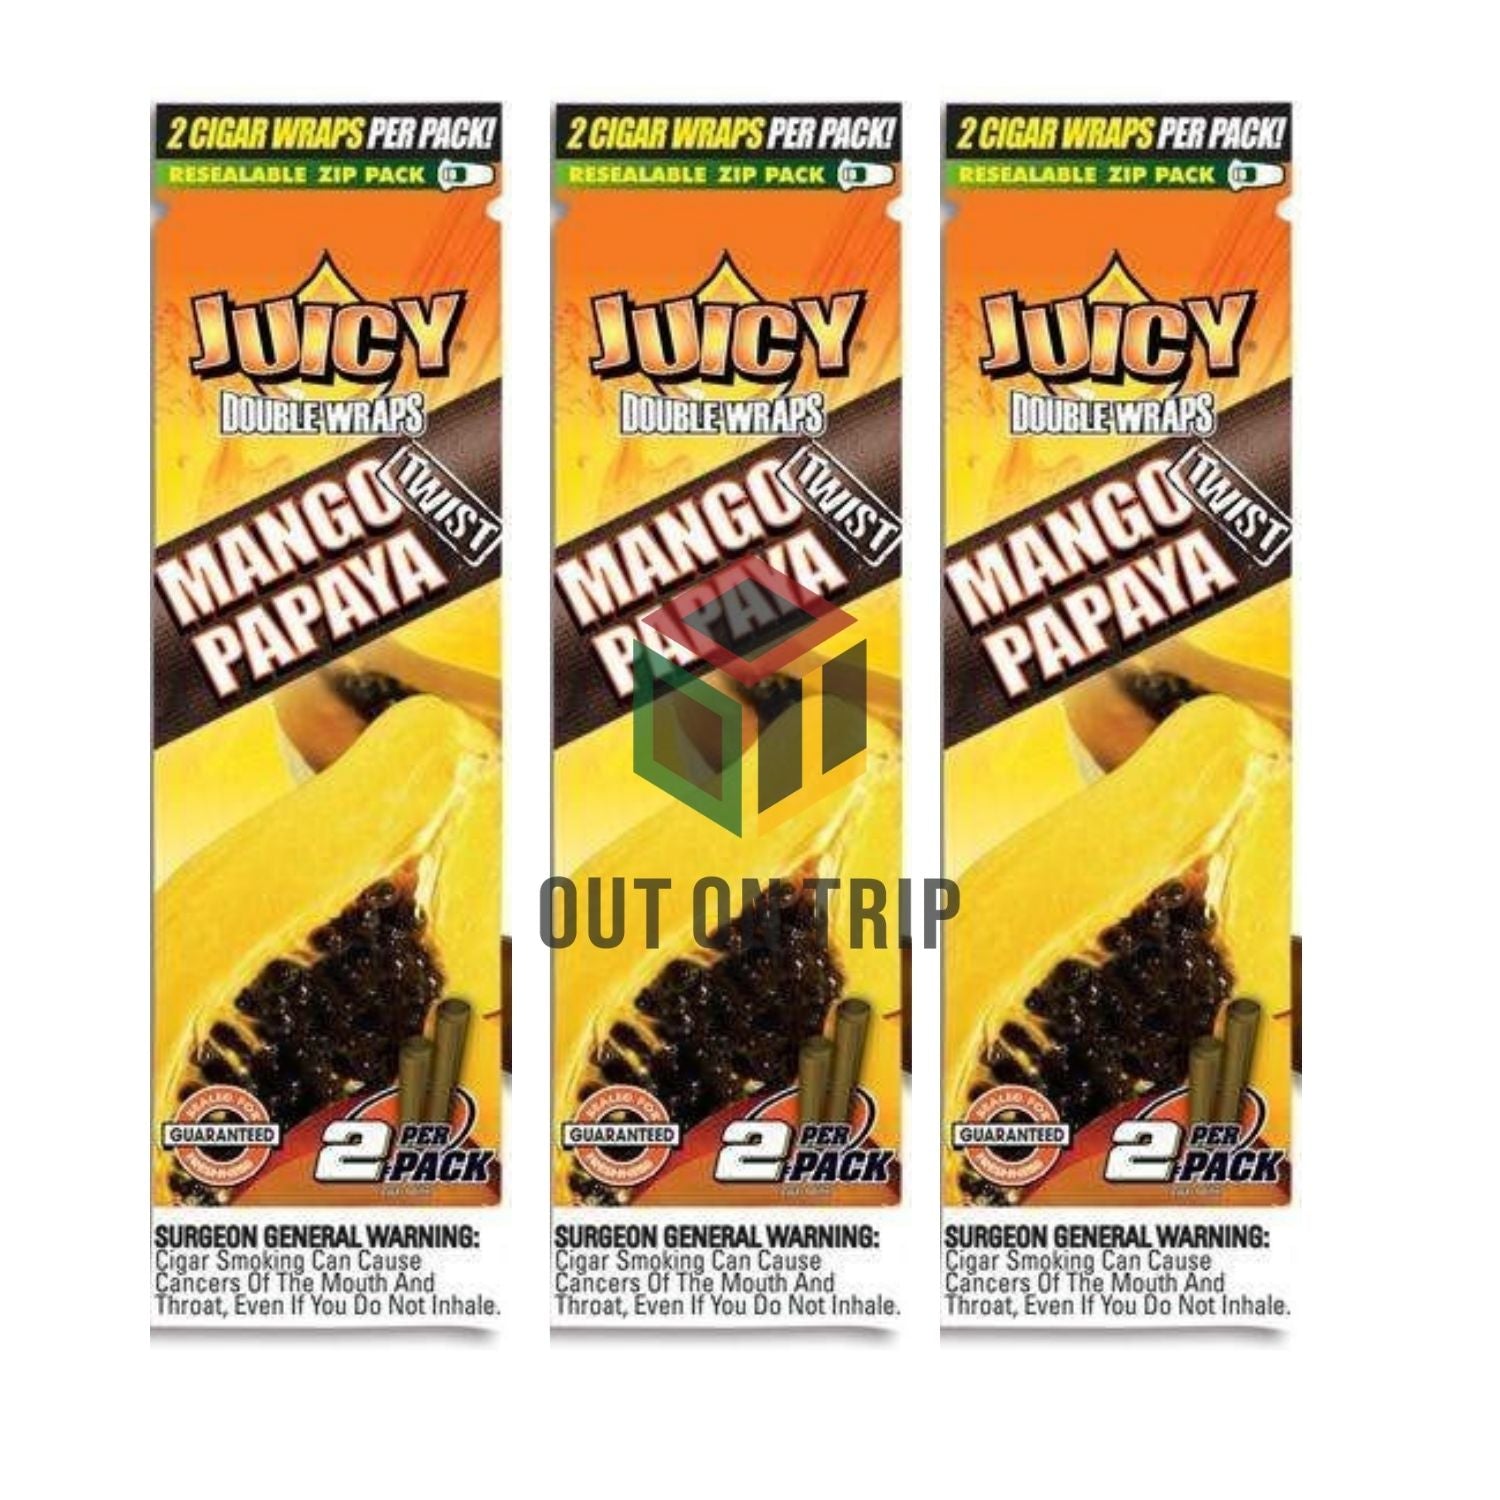 Juicy Double Wraps Blunt - Mango Papaya Flavour